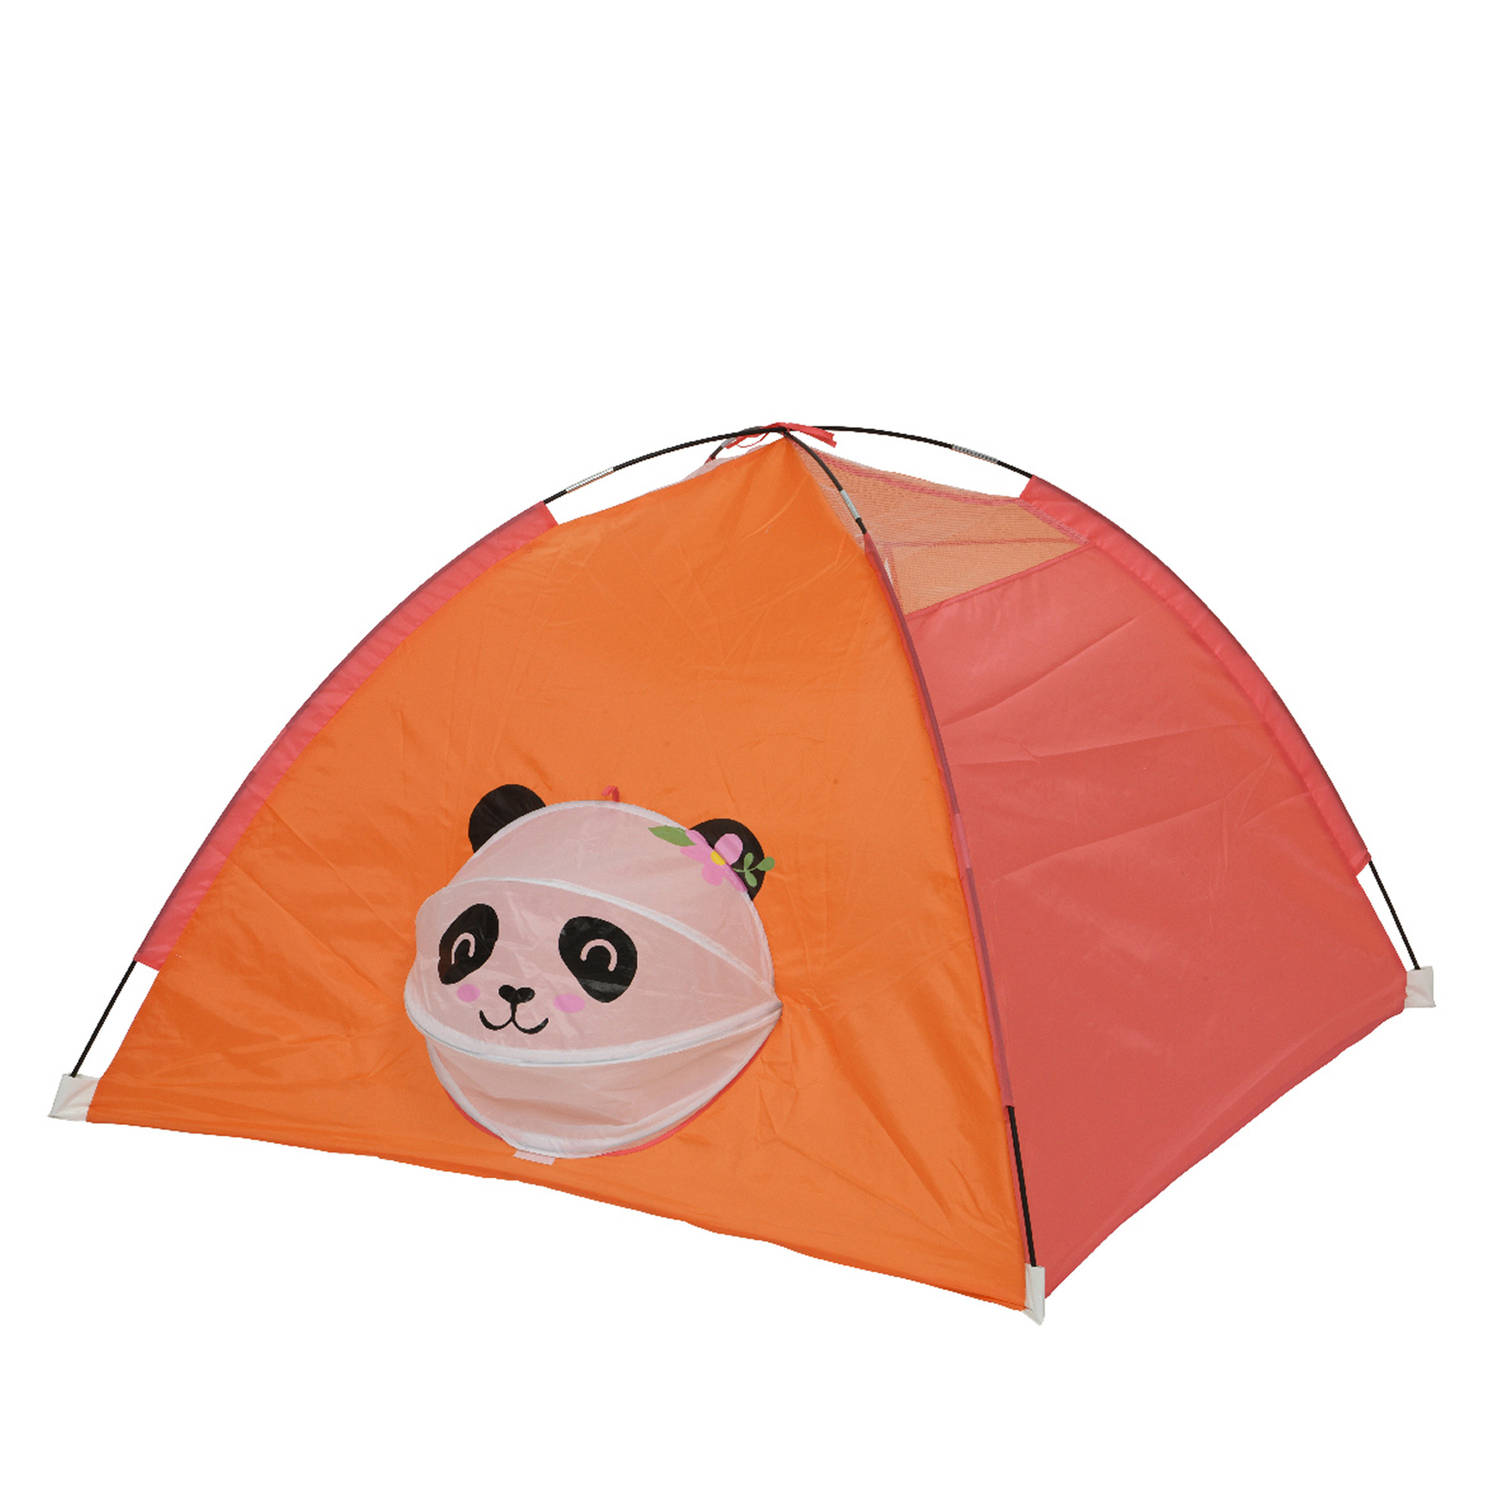 Speeltent voor kinderen panda thema polyester oranje 120 x H80 cm Speeltenten